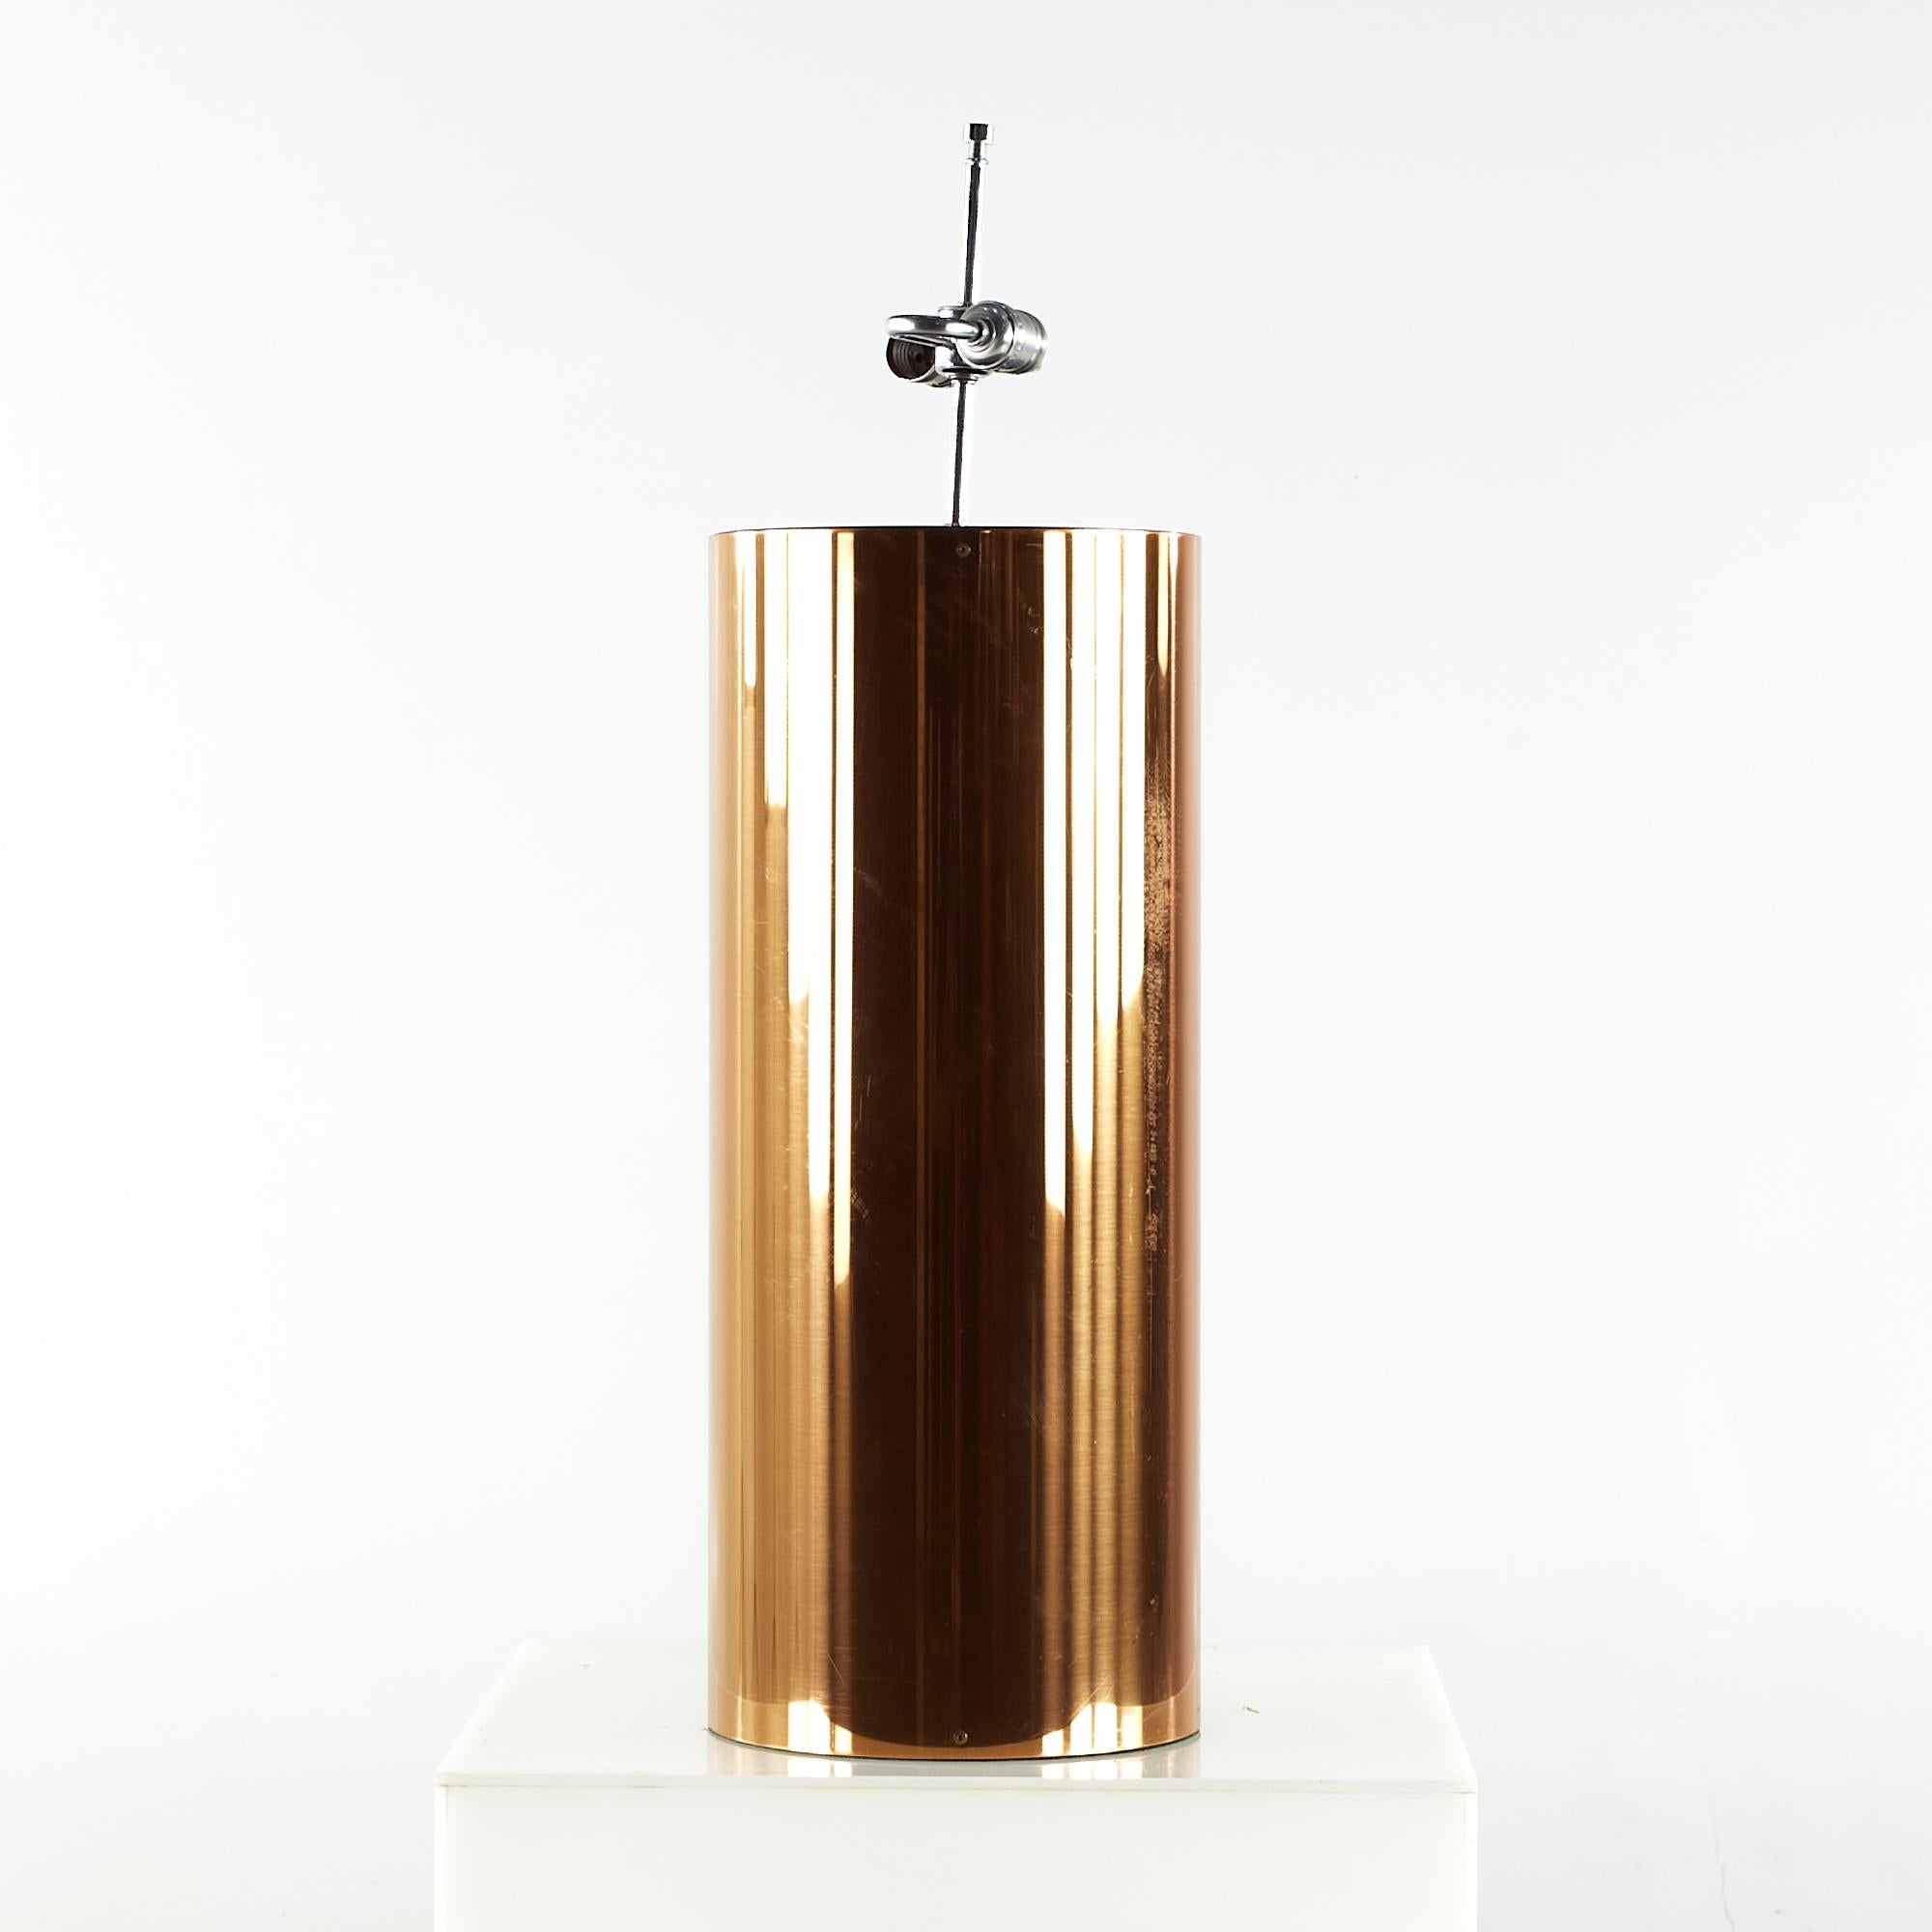 Kovacs Mid Century Copper Large Table Lamp (lampe à poser)

Cette lampe mesure : 10 de large x 10 de profond x 32.5 de haut

Nous prenons nos photos dans un studio à éclairage contrôlé afin de montrer le plus de détails possible. Nous ne faisons pas